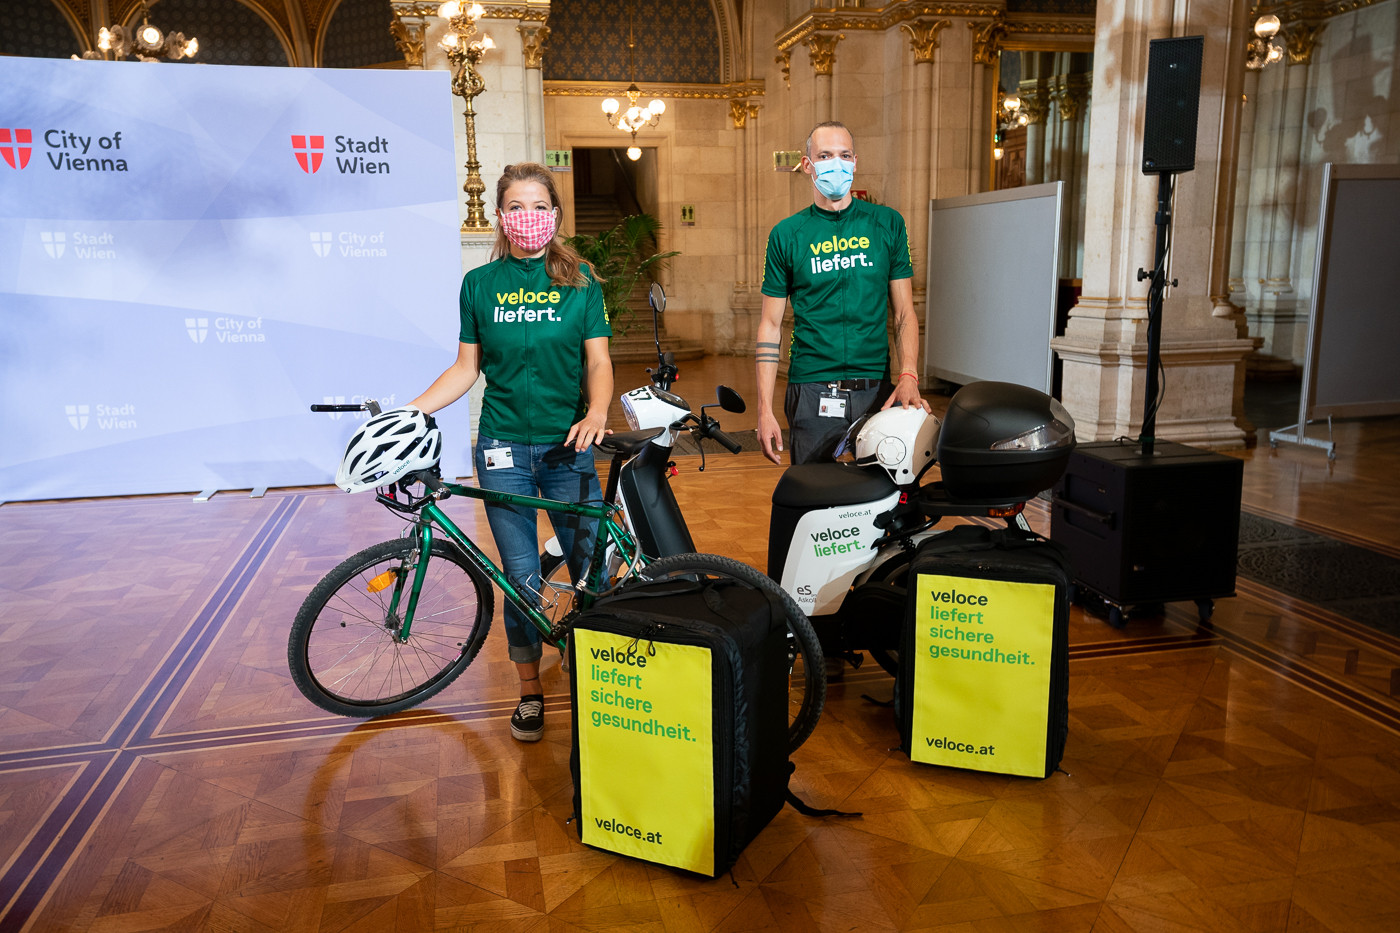 Biciklis tesztfutárokat állít forgalomba Bécs